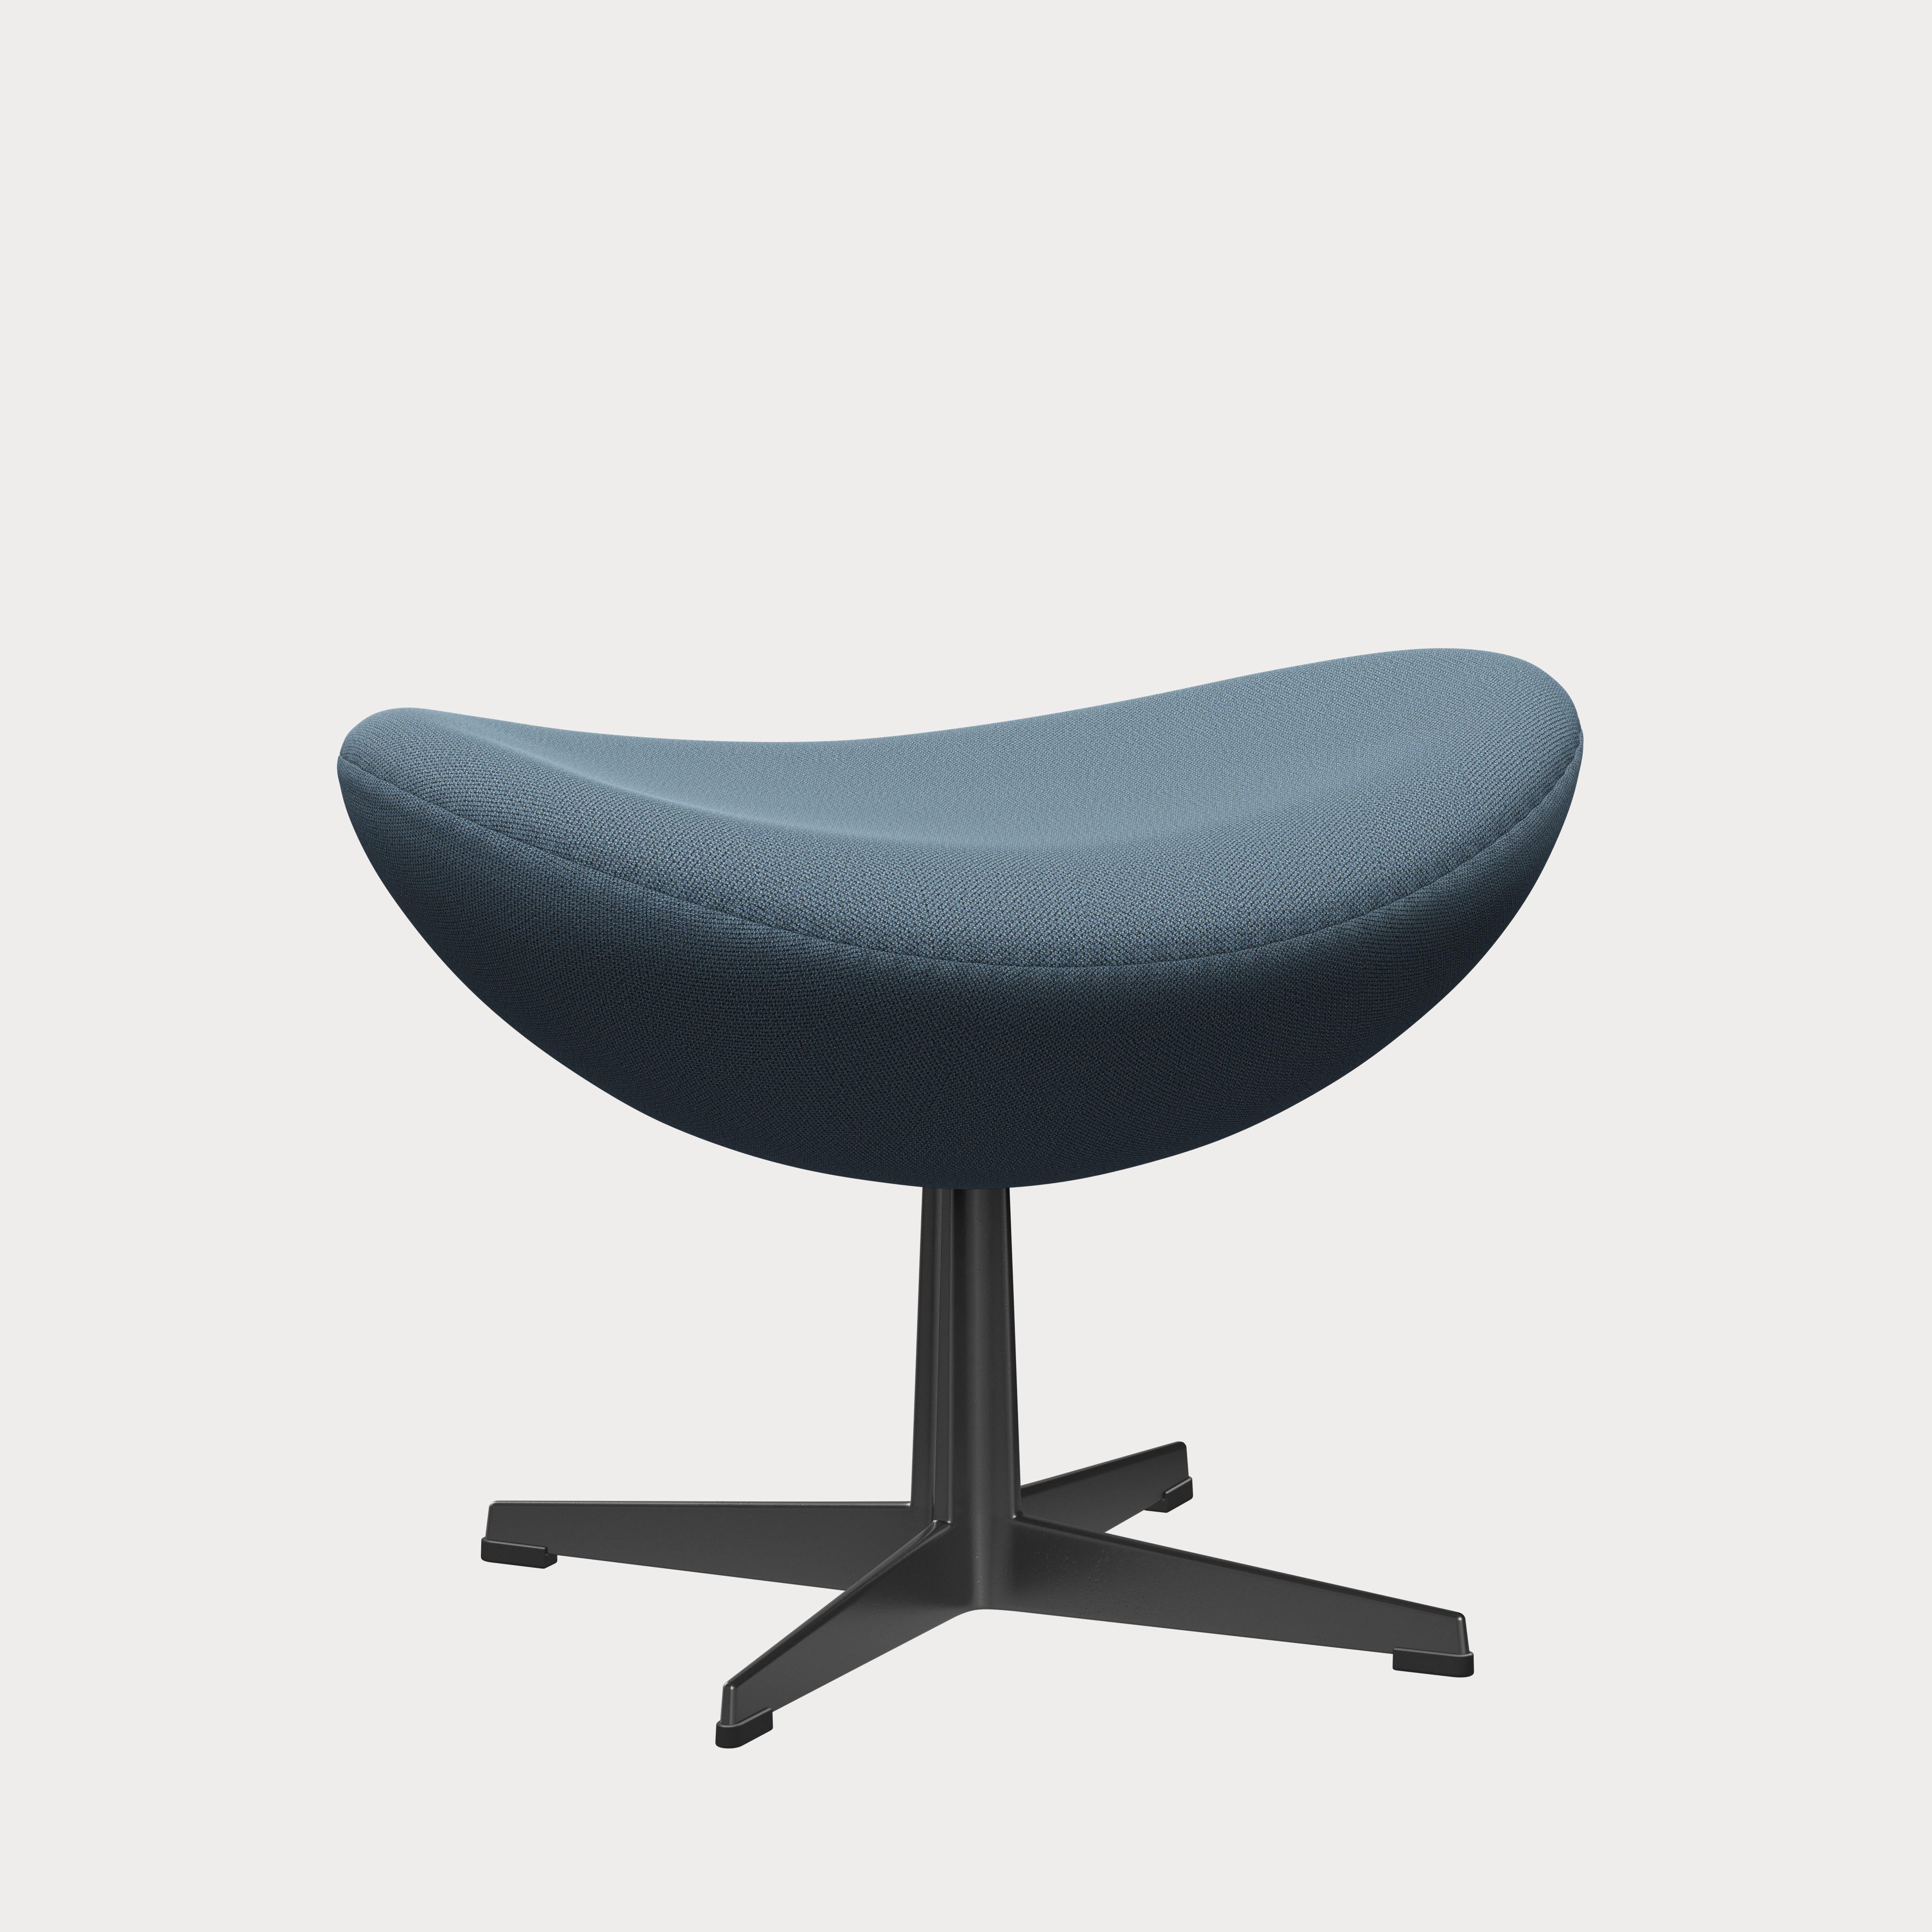 Arne Jacobsen 'Egg' Footstool for Fritz Hansen in Fabric Upholstery (Cat. 1) For Sale 3